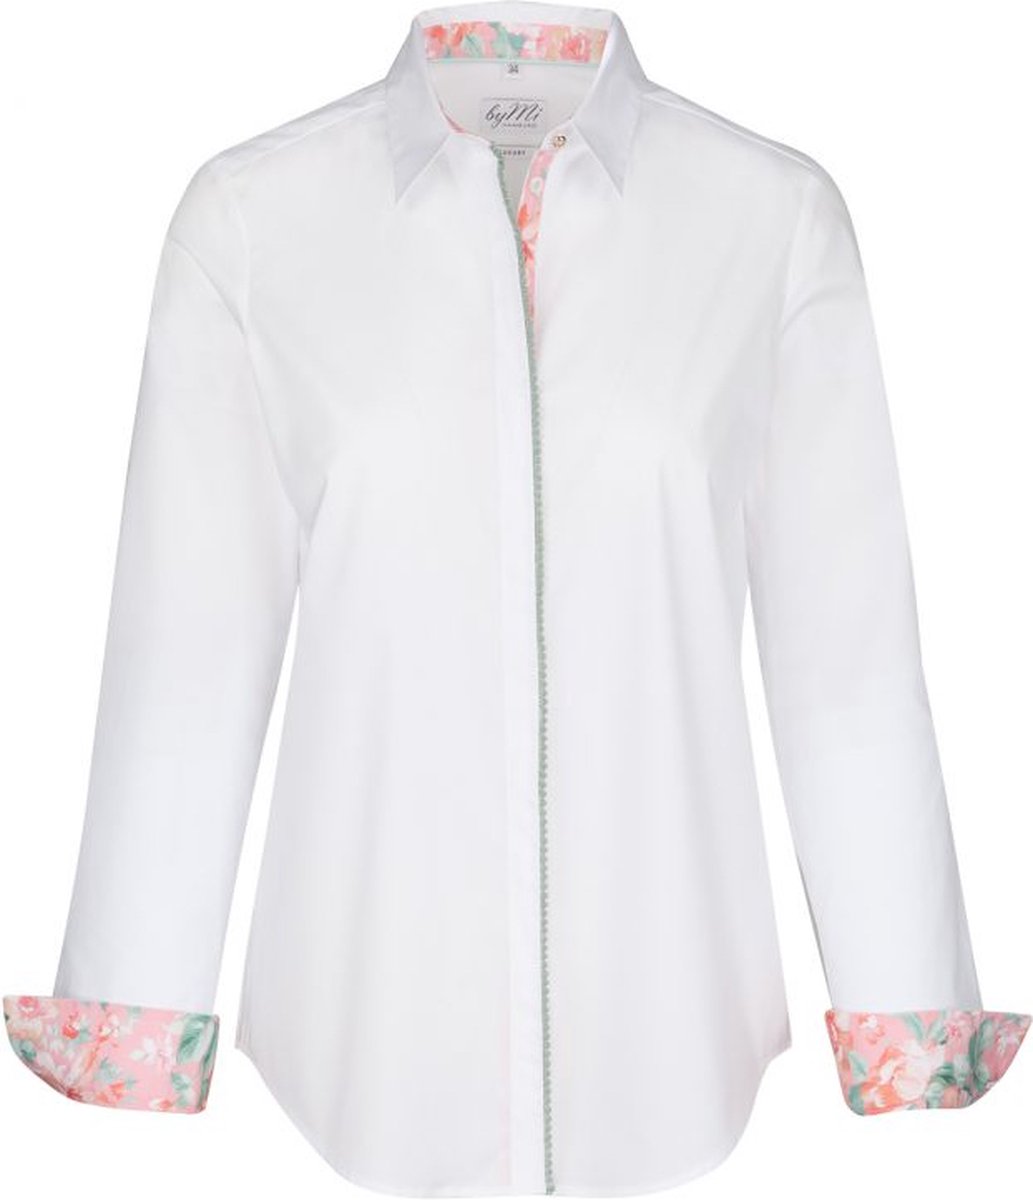 Dames blouse wit met roze bloemenprint goudtoon knopen volwassen lange mouw katoen luxe chic maat 36